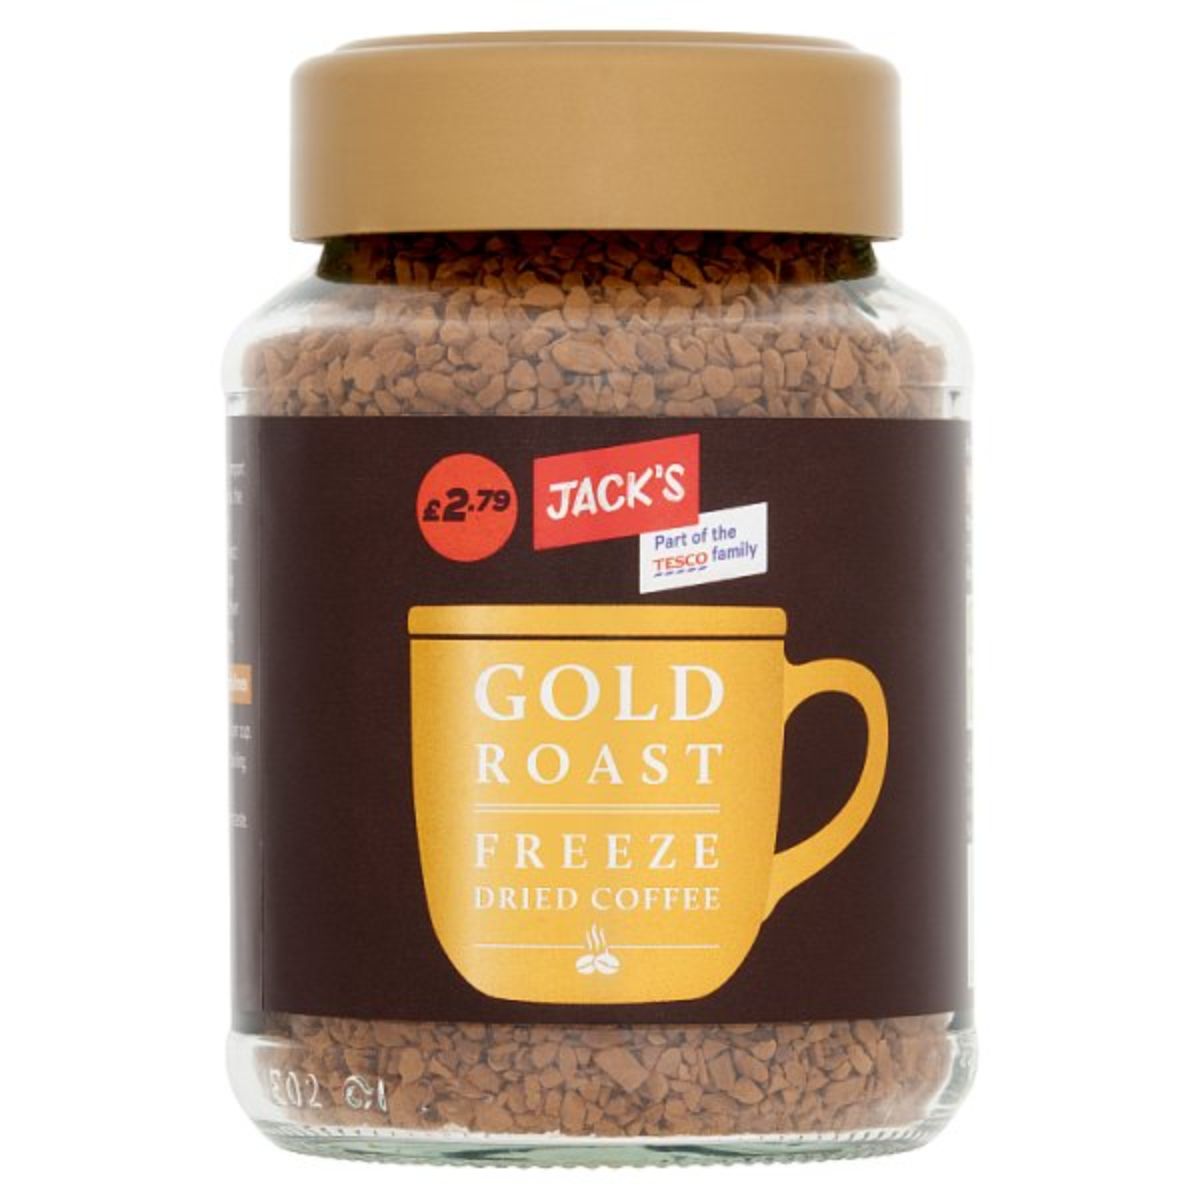 A jar of Jacks - Gold Roast Freeze Dried Coffee - 90g.